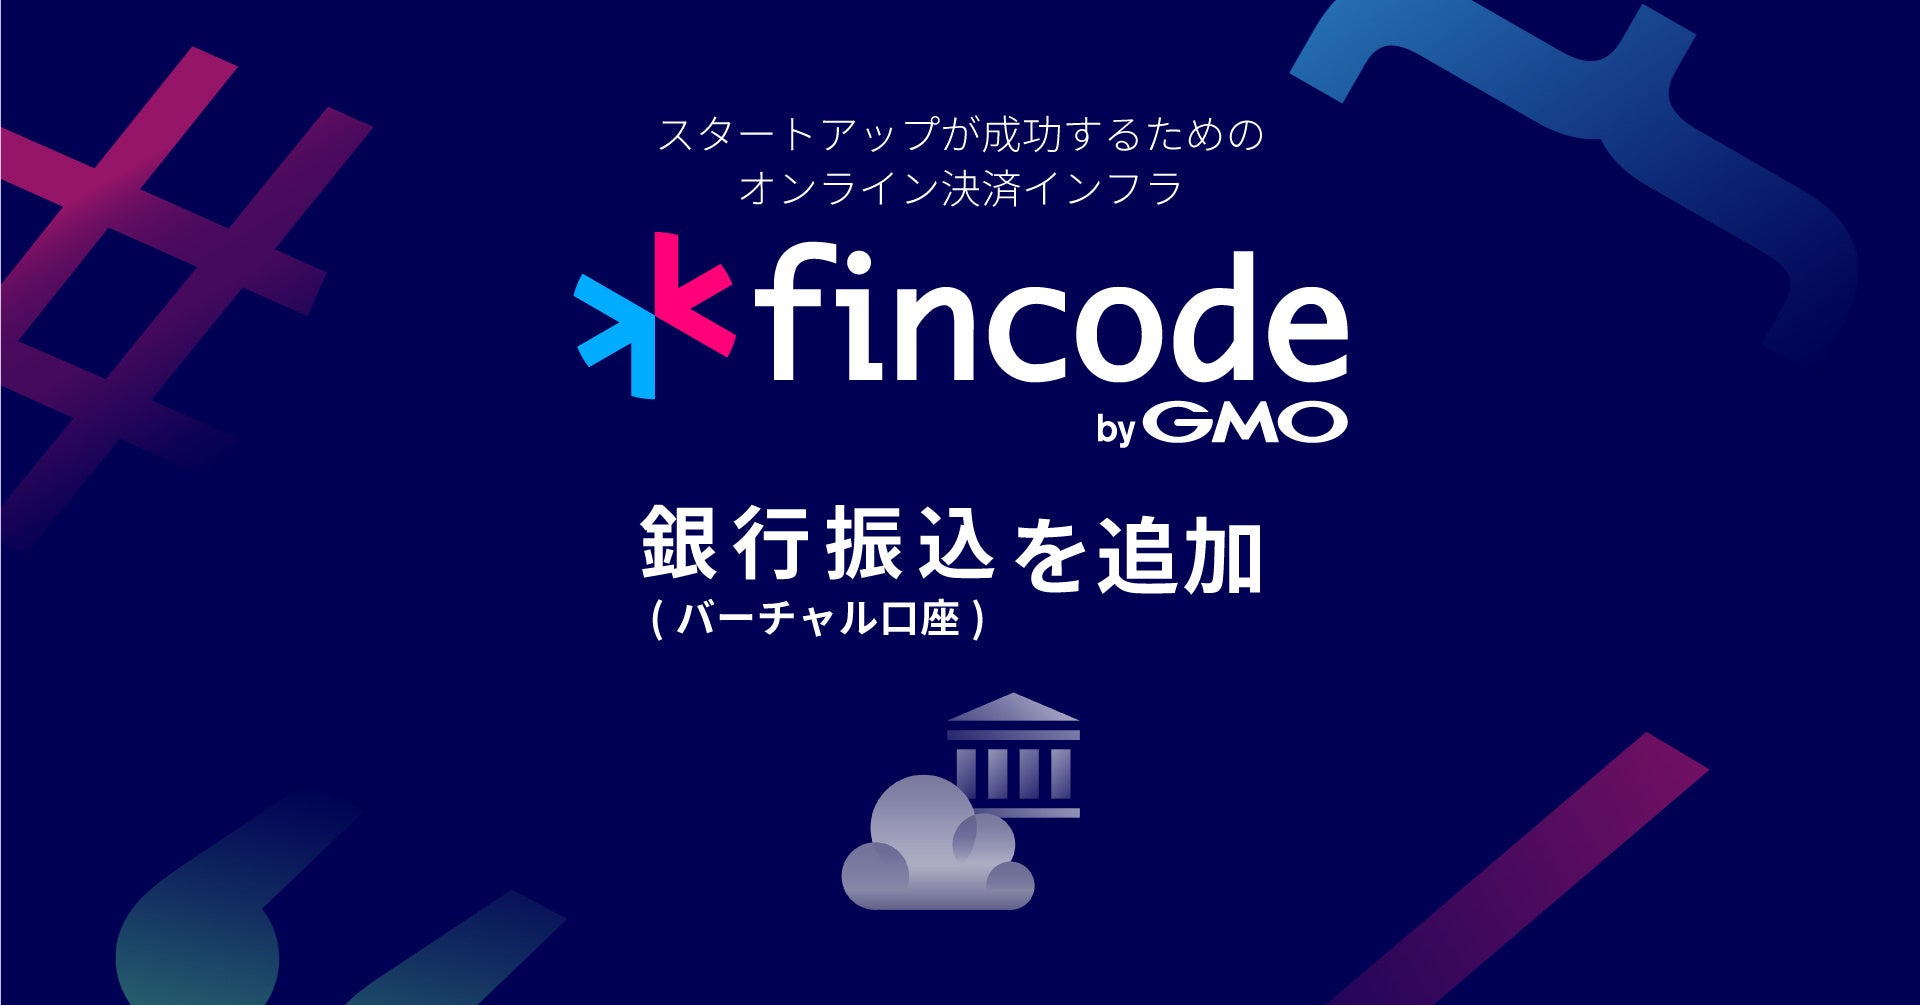 オンライン決済インフラ「fincode byGMO」、決済手段に「銀行振込（バーチャル口座）」を追加【GMOイプシロン】